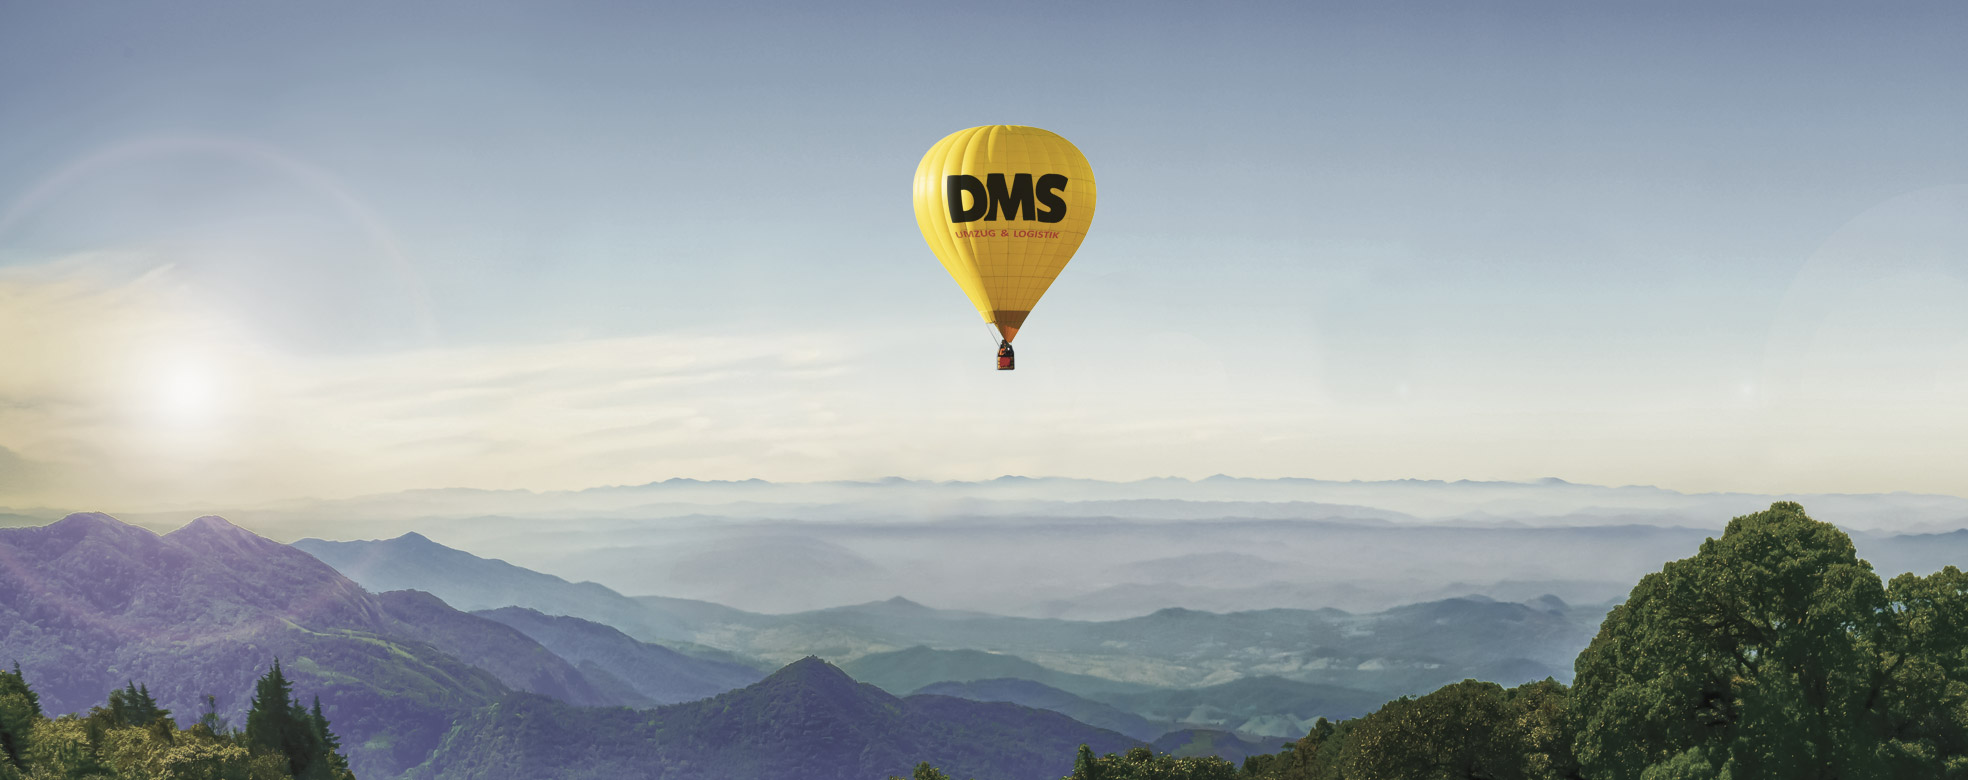 Ballon mit Logo der DMS